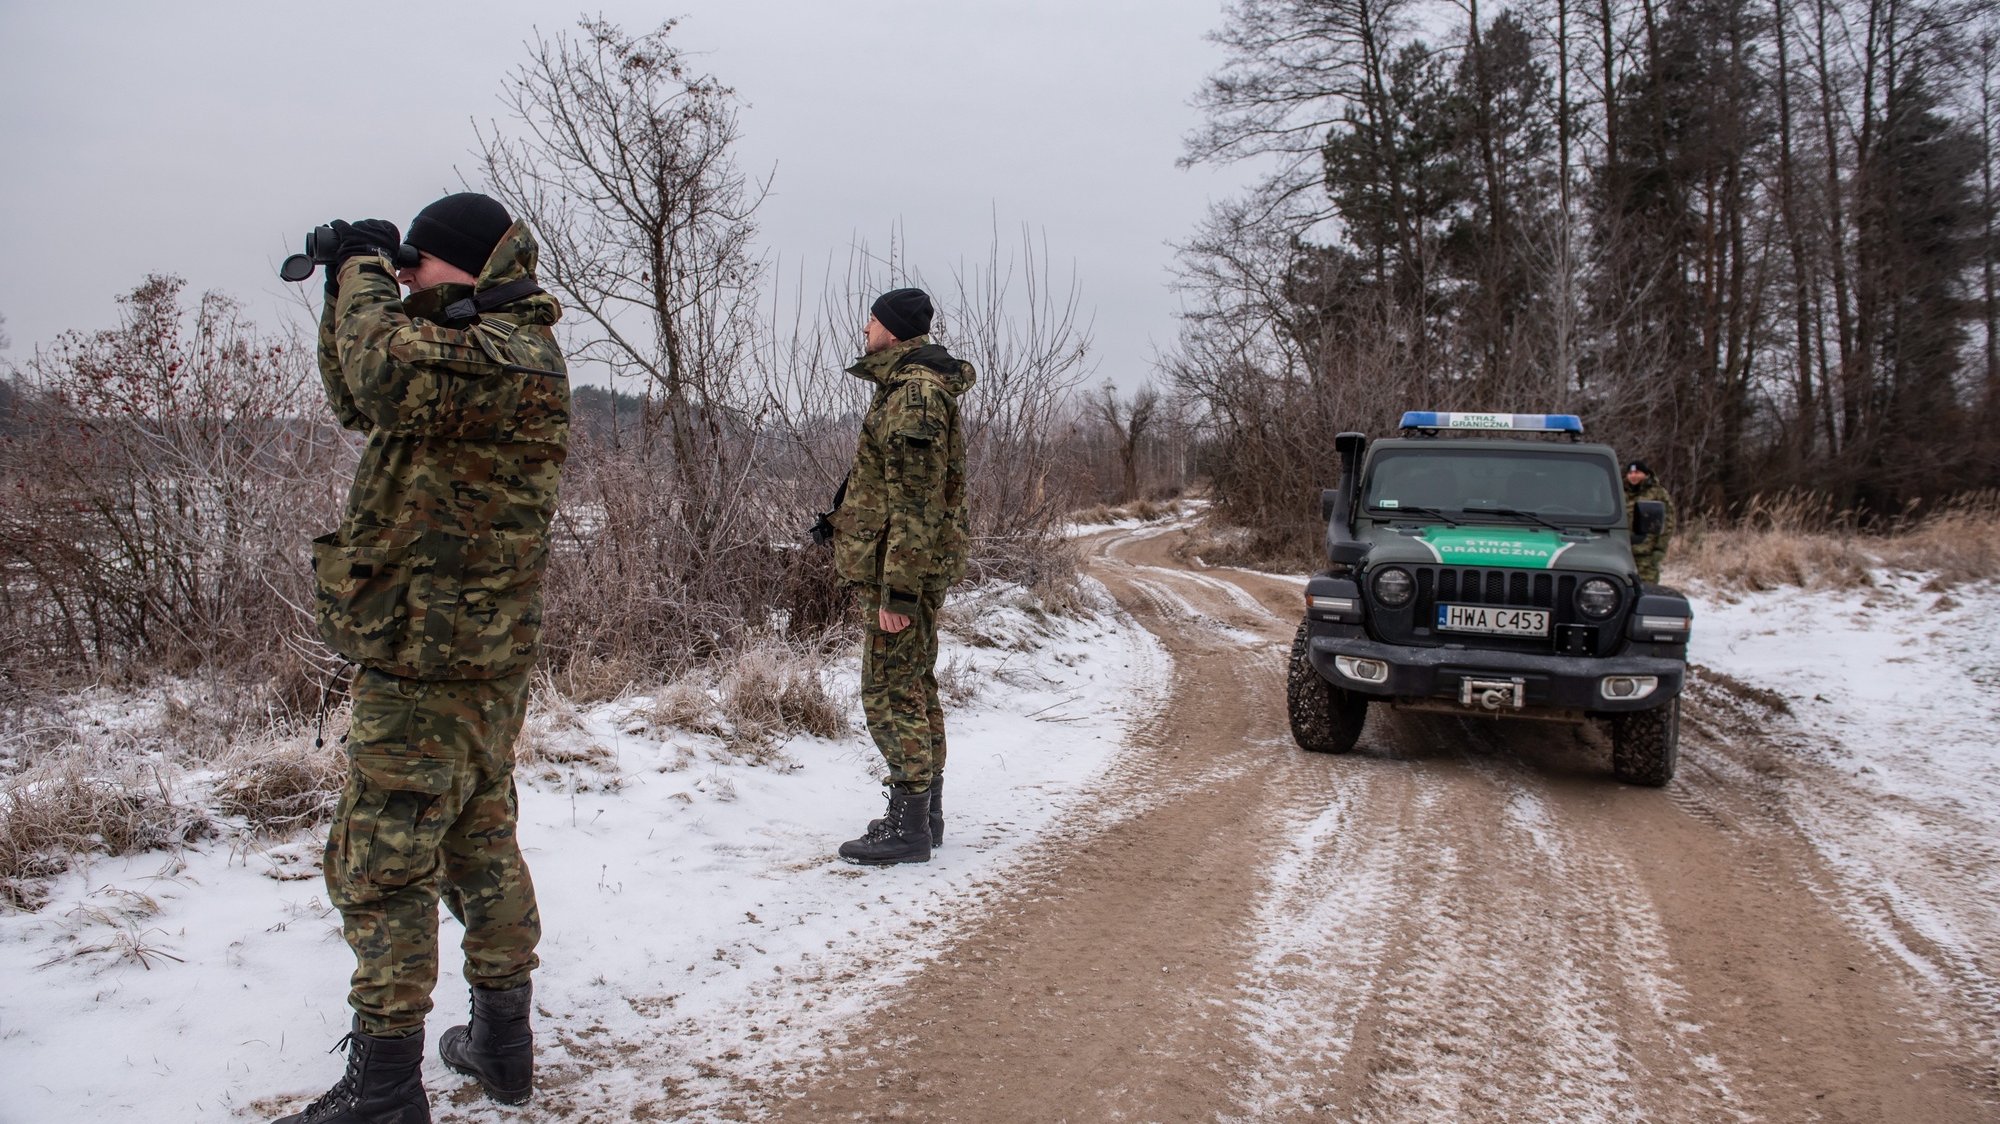 A fronteira da Polónia com a Bielorrússia a ser controlada por guardas militares